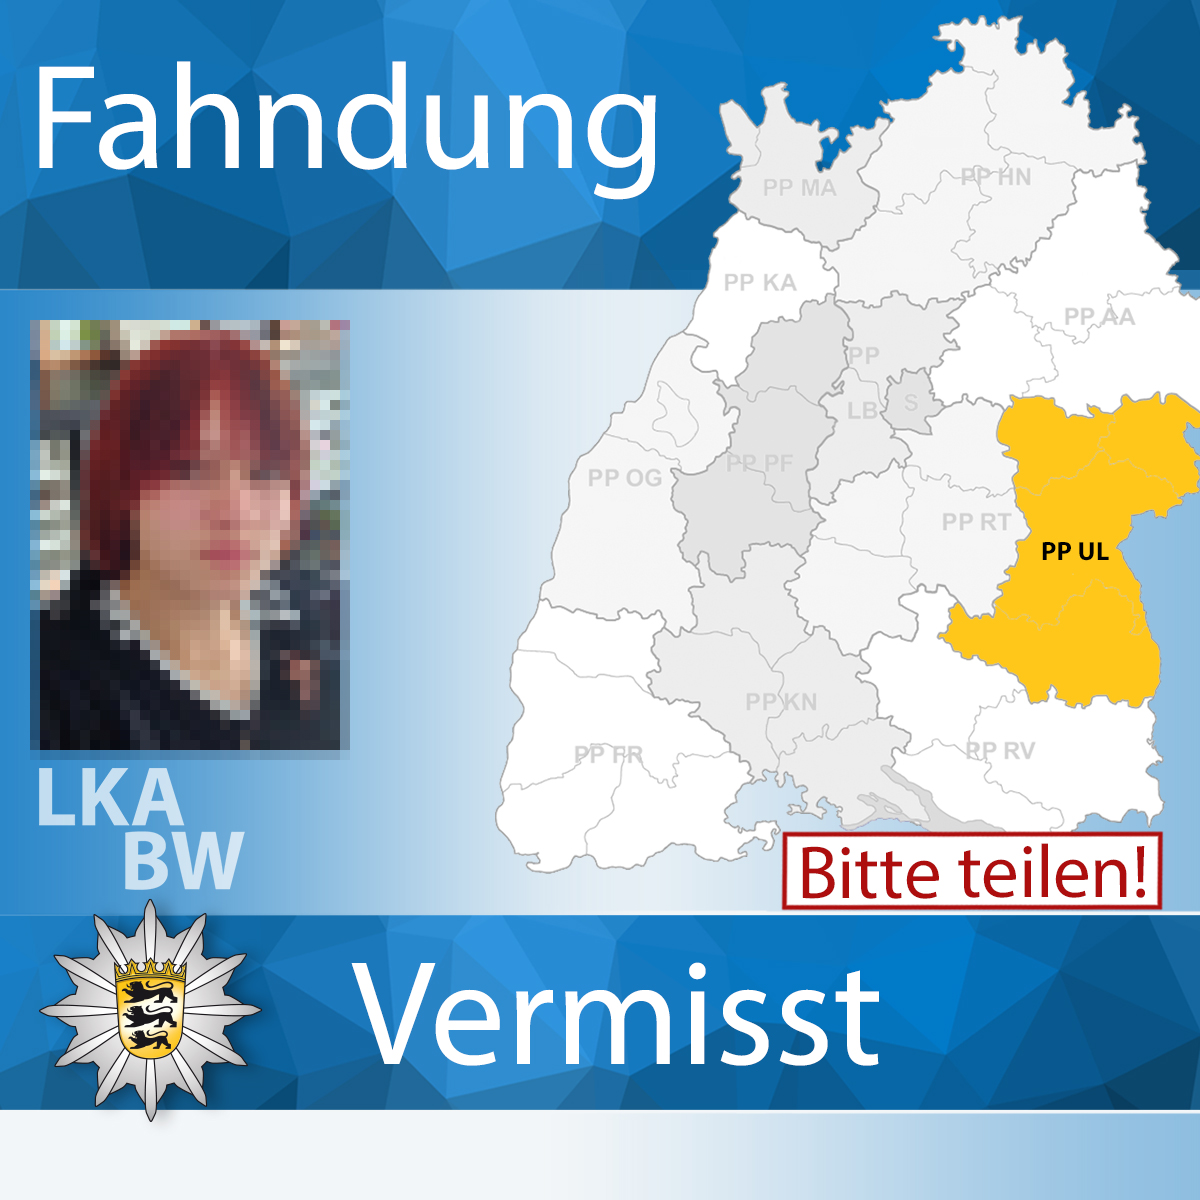 #Vermisstenfahndung - BITTE RT ⚠ Seit dem 28.03.24 wird die 16-jährige Linnea S. aus #Ulm vermisst. Hinweisen zufolge soll sie sich zuletzt in 89584 #Ehingen aufgehalten haben. Hinweise bitte an die Polizei #Ulm.

Zur #Fahndung ▶ t1p.de/eh84o

Euer #LKABW